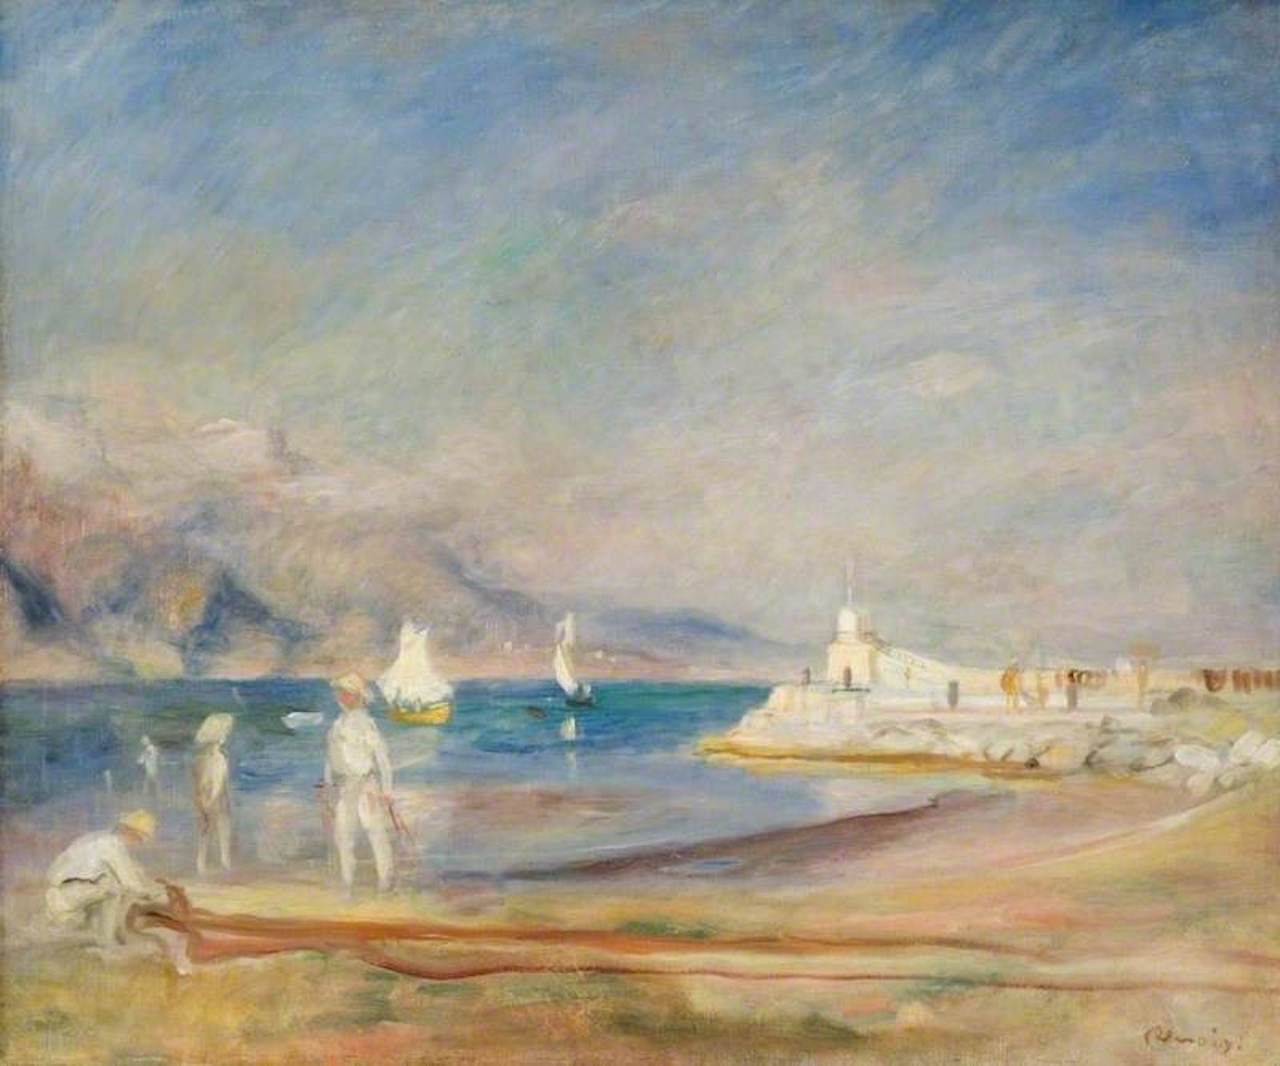 सेंट ट्रोपेज़ by Pierre-Auguste Renoir - 1902 